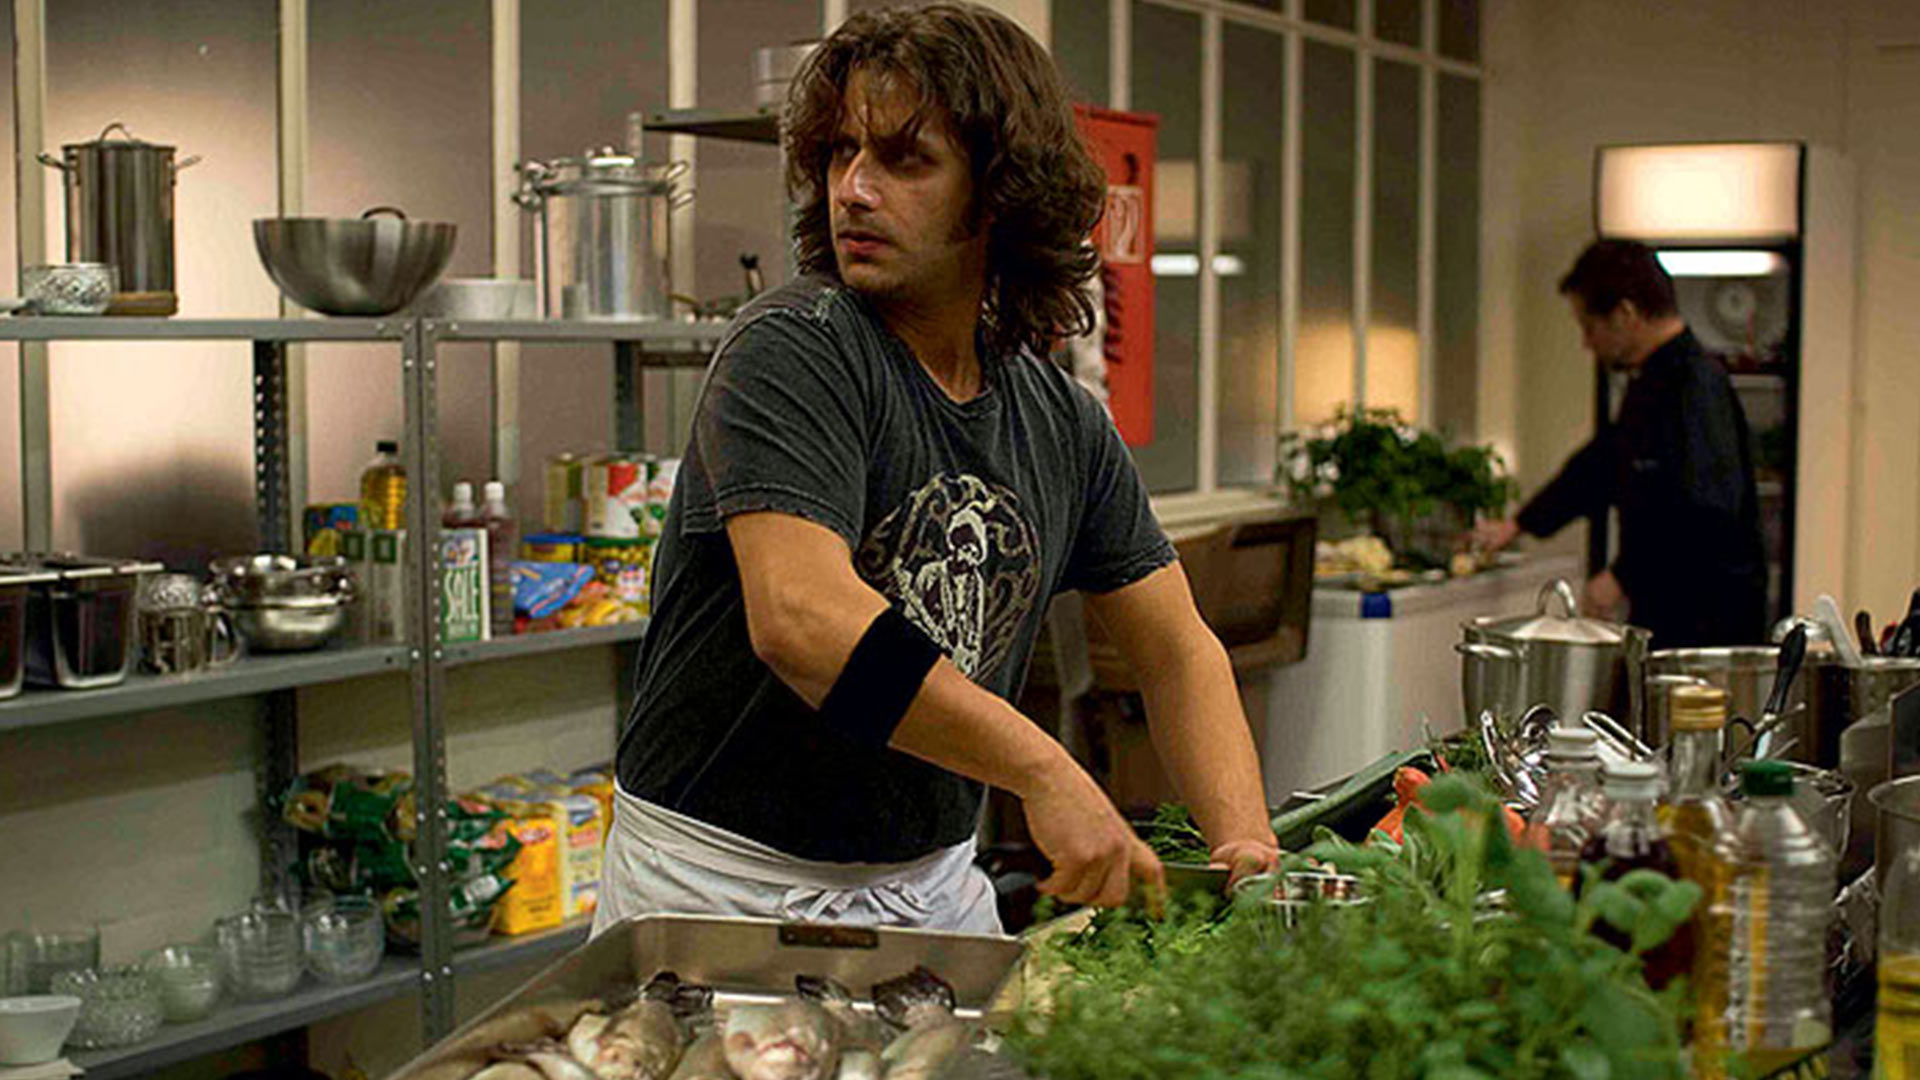 مردی در حال خورد کردن سبزی در فیلم روح آشپزخانه